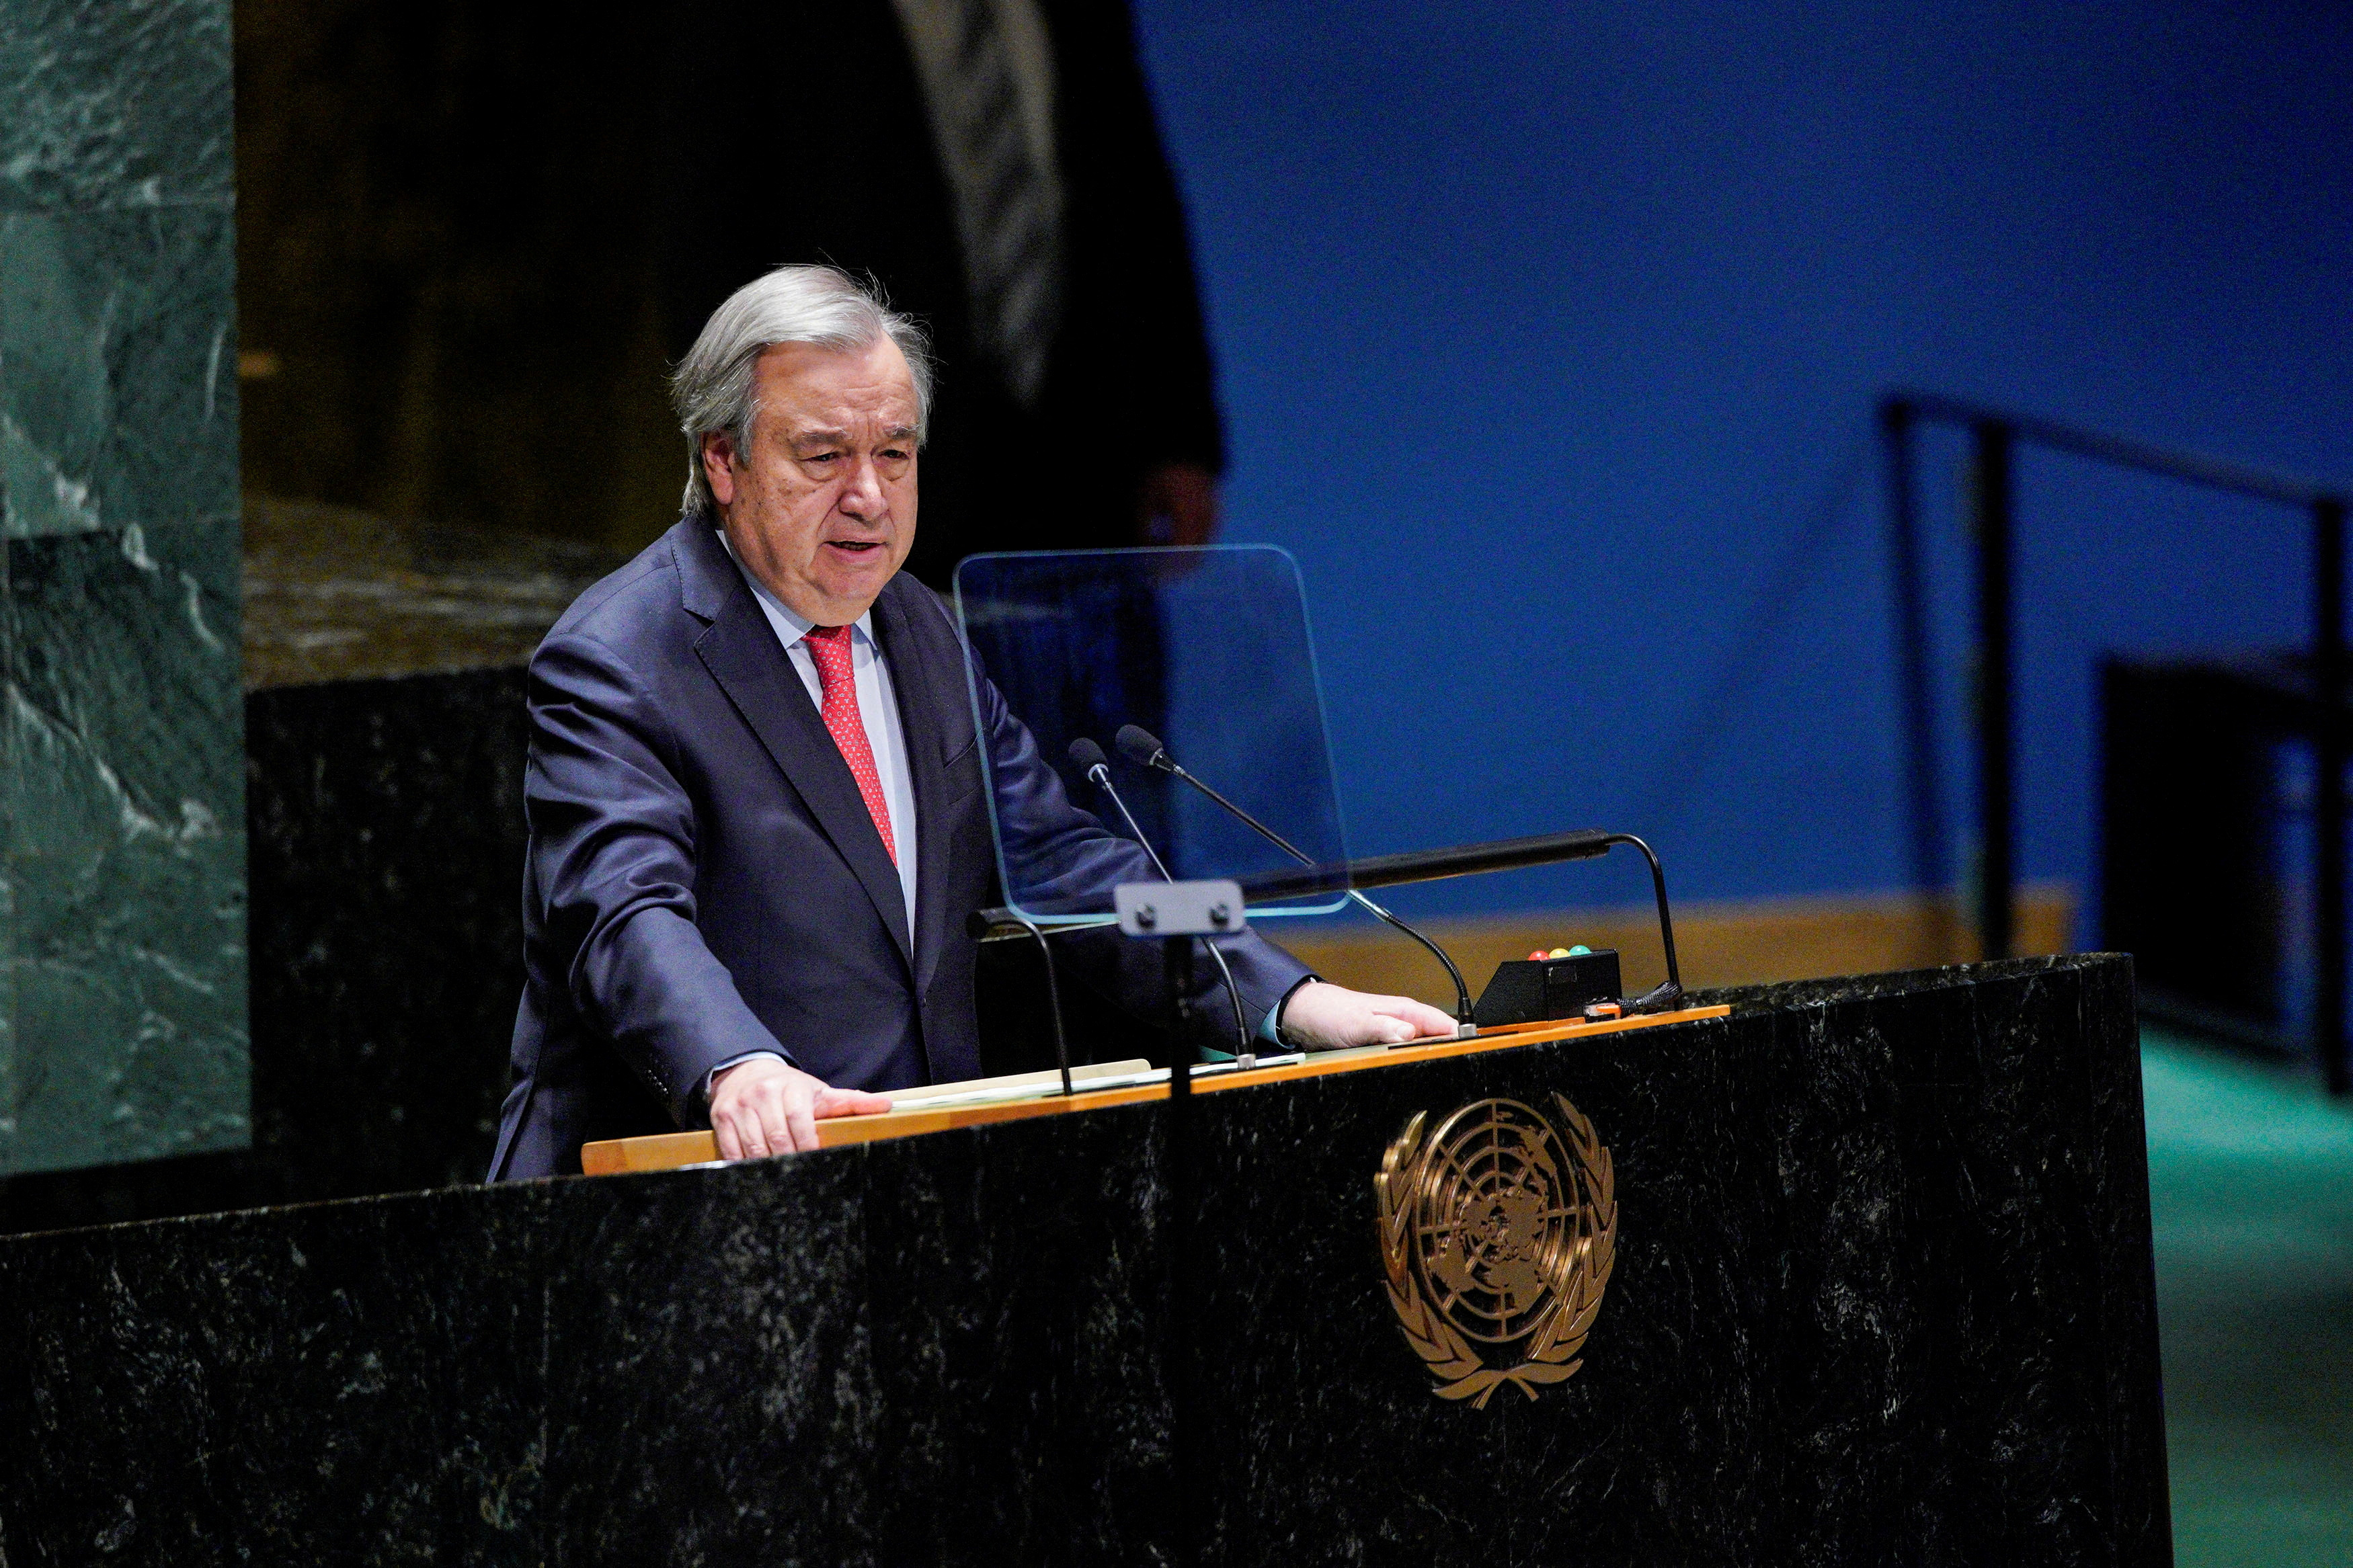 El secretario general de la ONU, Antonio Guterres, se unió al pedido de paz al criticar el miércoles una invasión que es “una afrenta a nuestra conciencia colectiva”. (REUTERS)